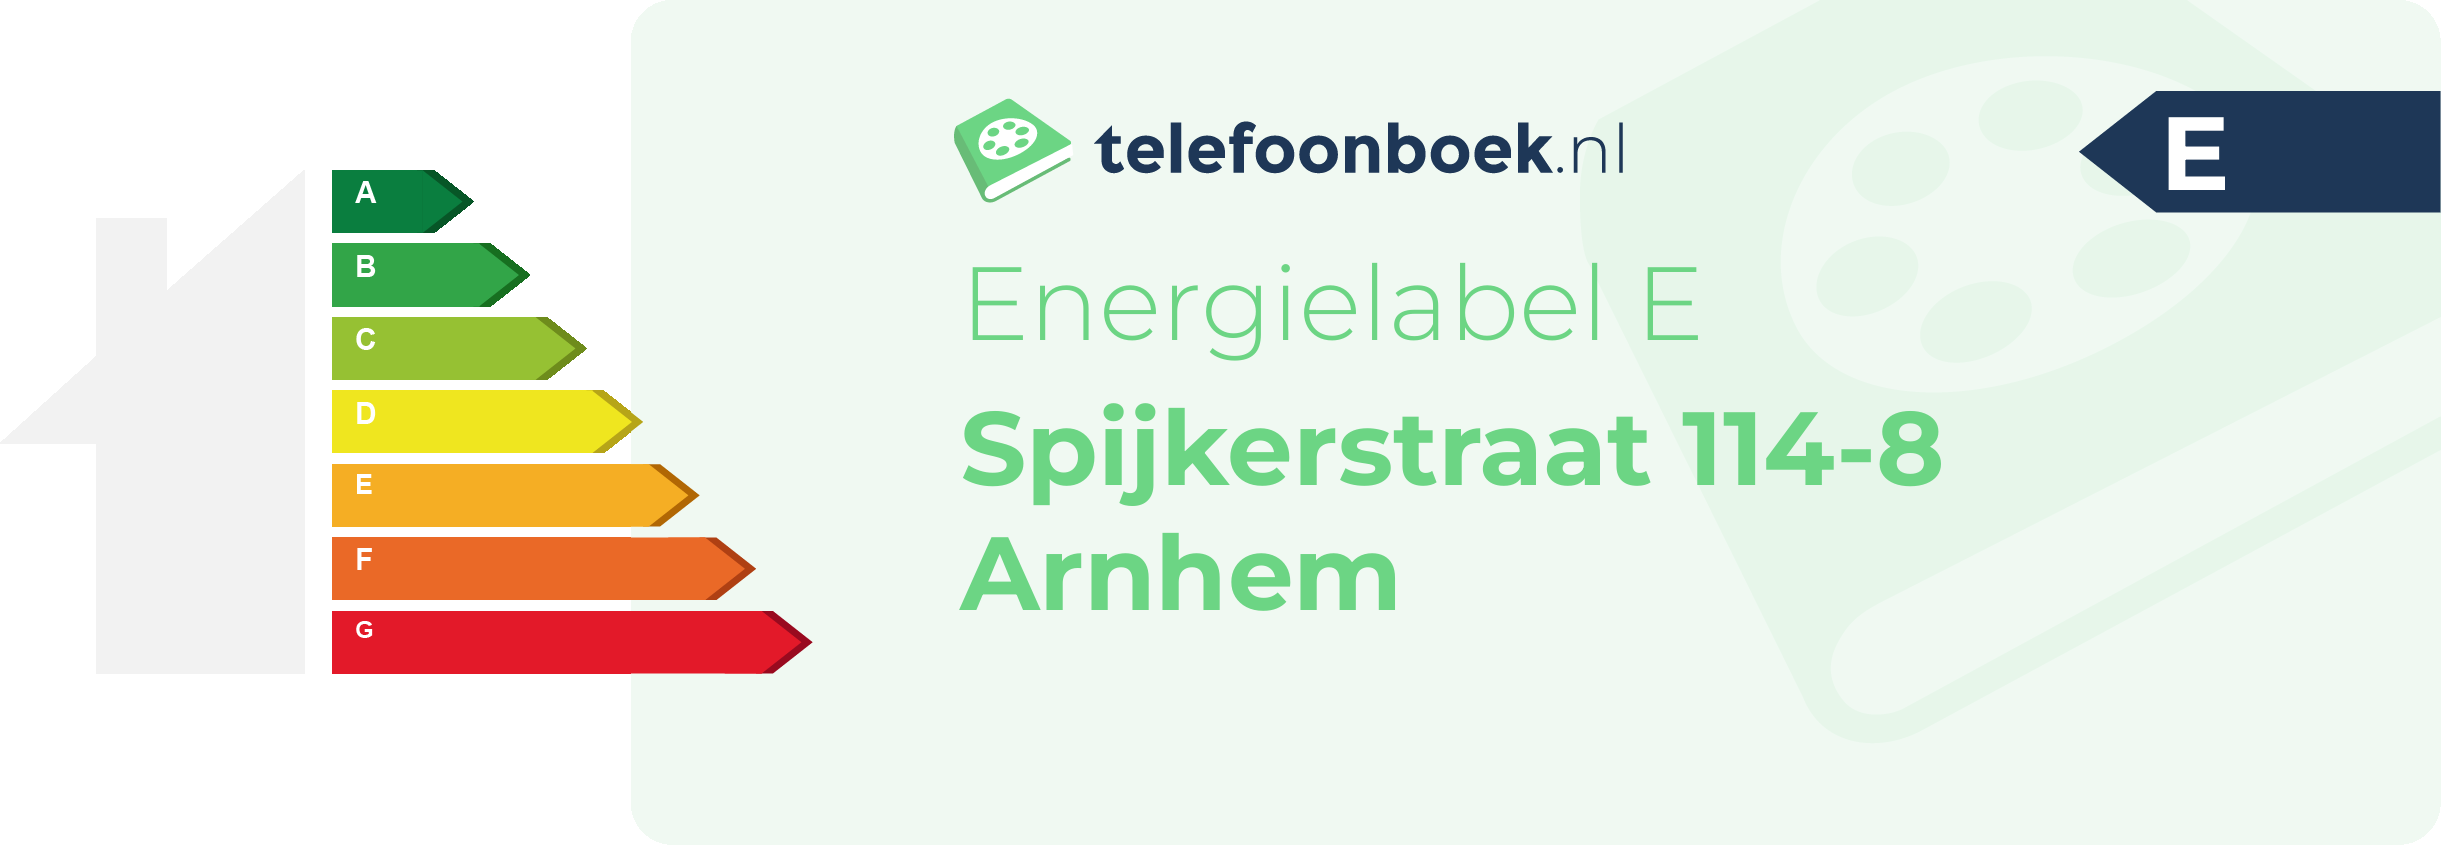 Energielabel Spijkerstraat 114-8 Arnhem